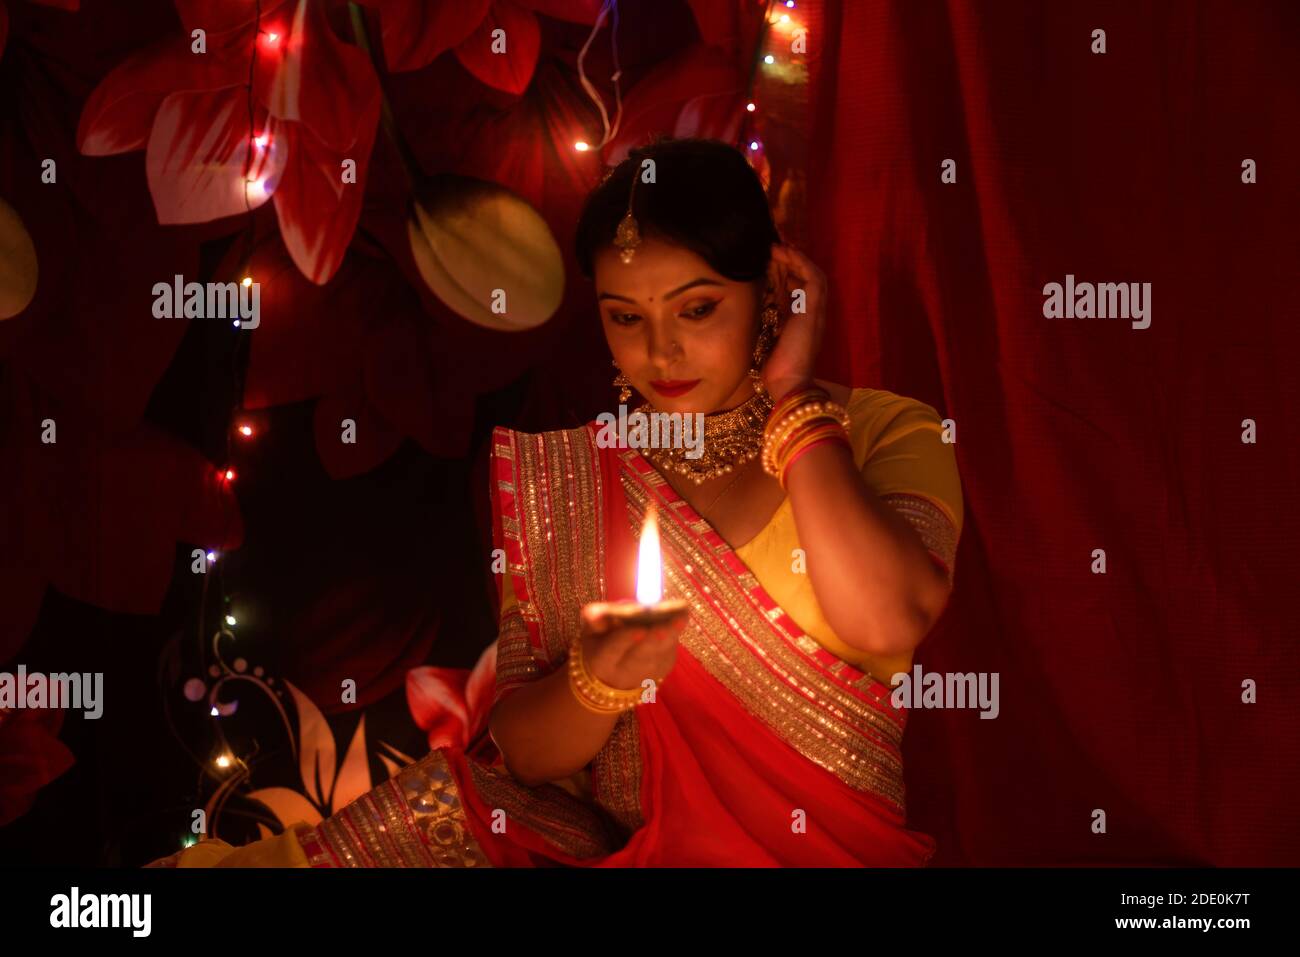 Una giovane e bella donna indiana bengalese in abito tradizionale indiano sta tenendo una Diwali diya / lampada in mano davanti a colorate luci bokeh. Foto Stock